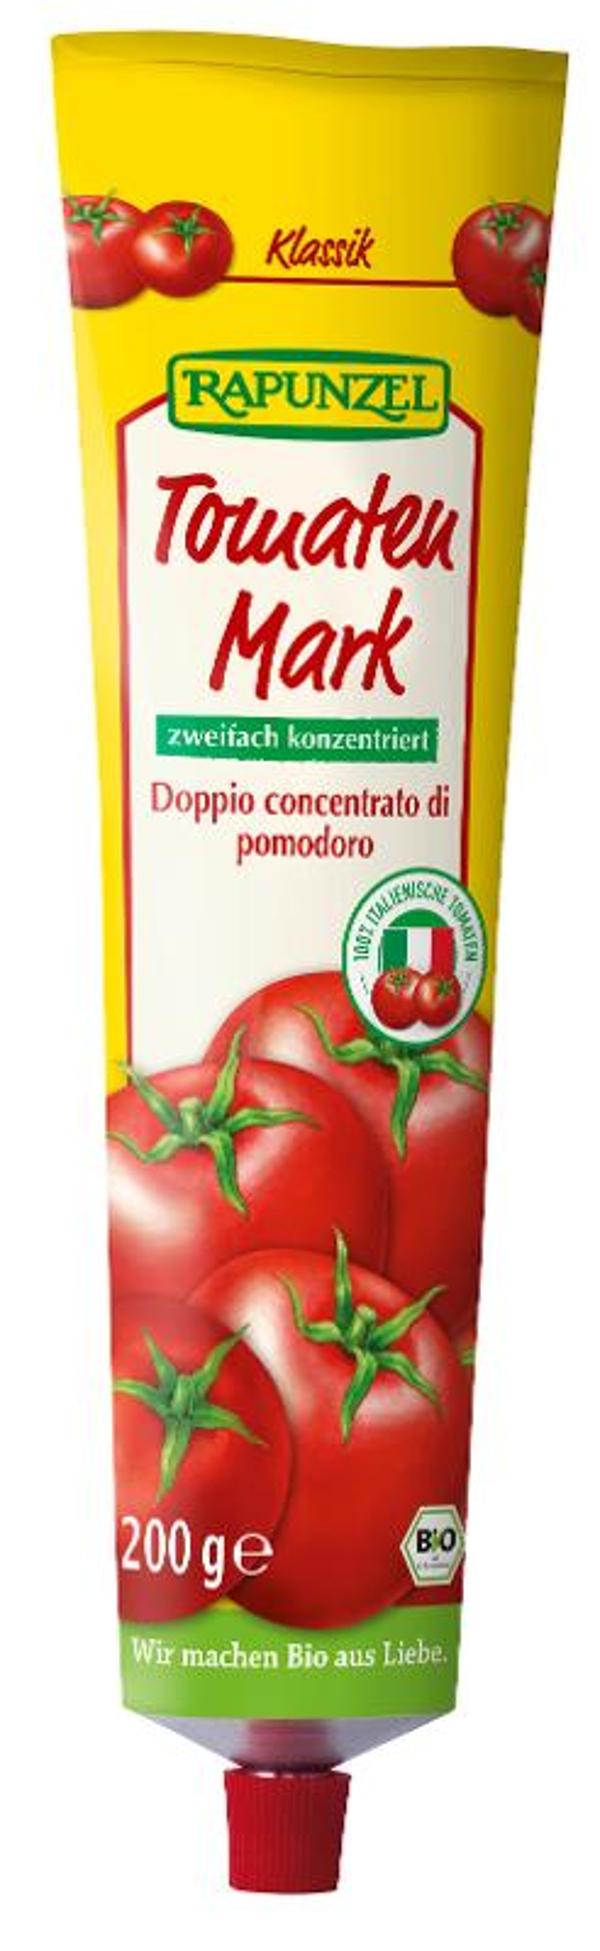 Produktfoto zu Tomatenmark, zweifach konzentriert 200g